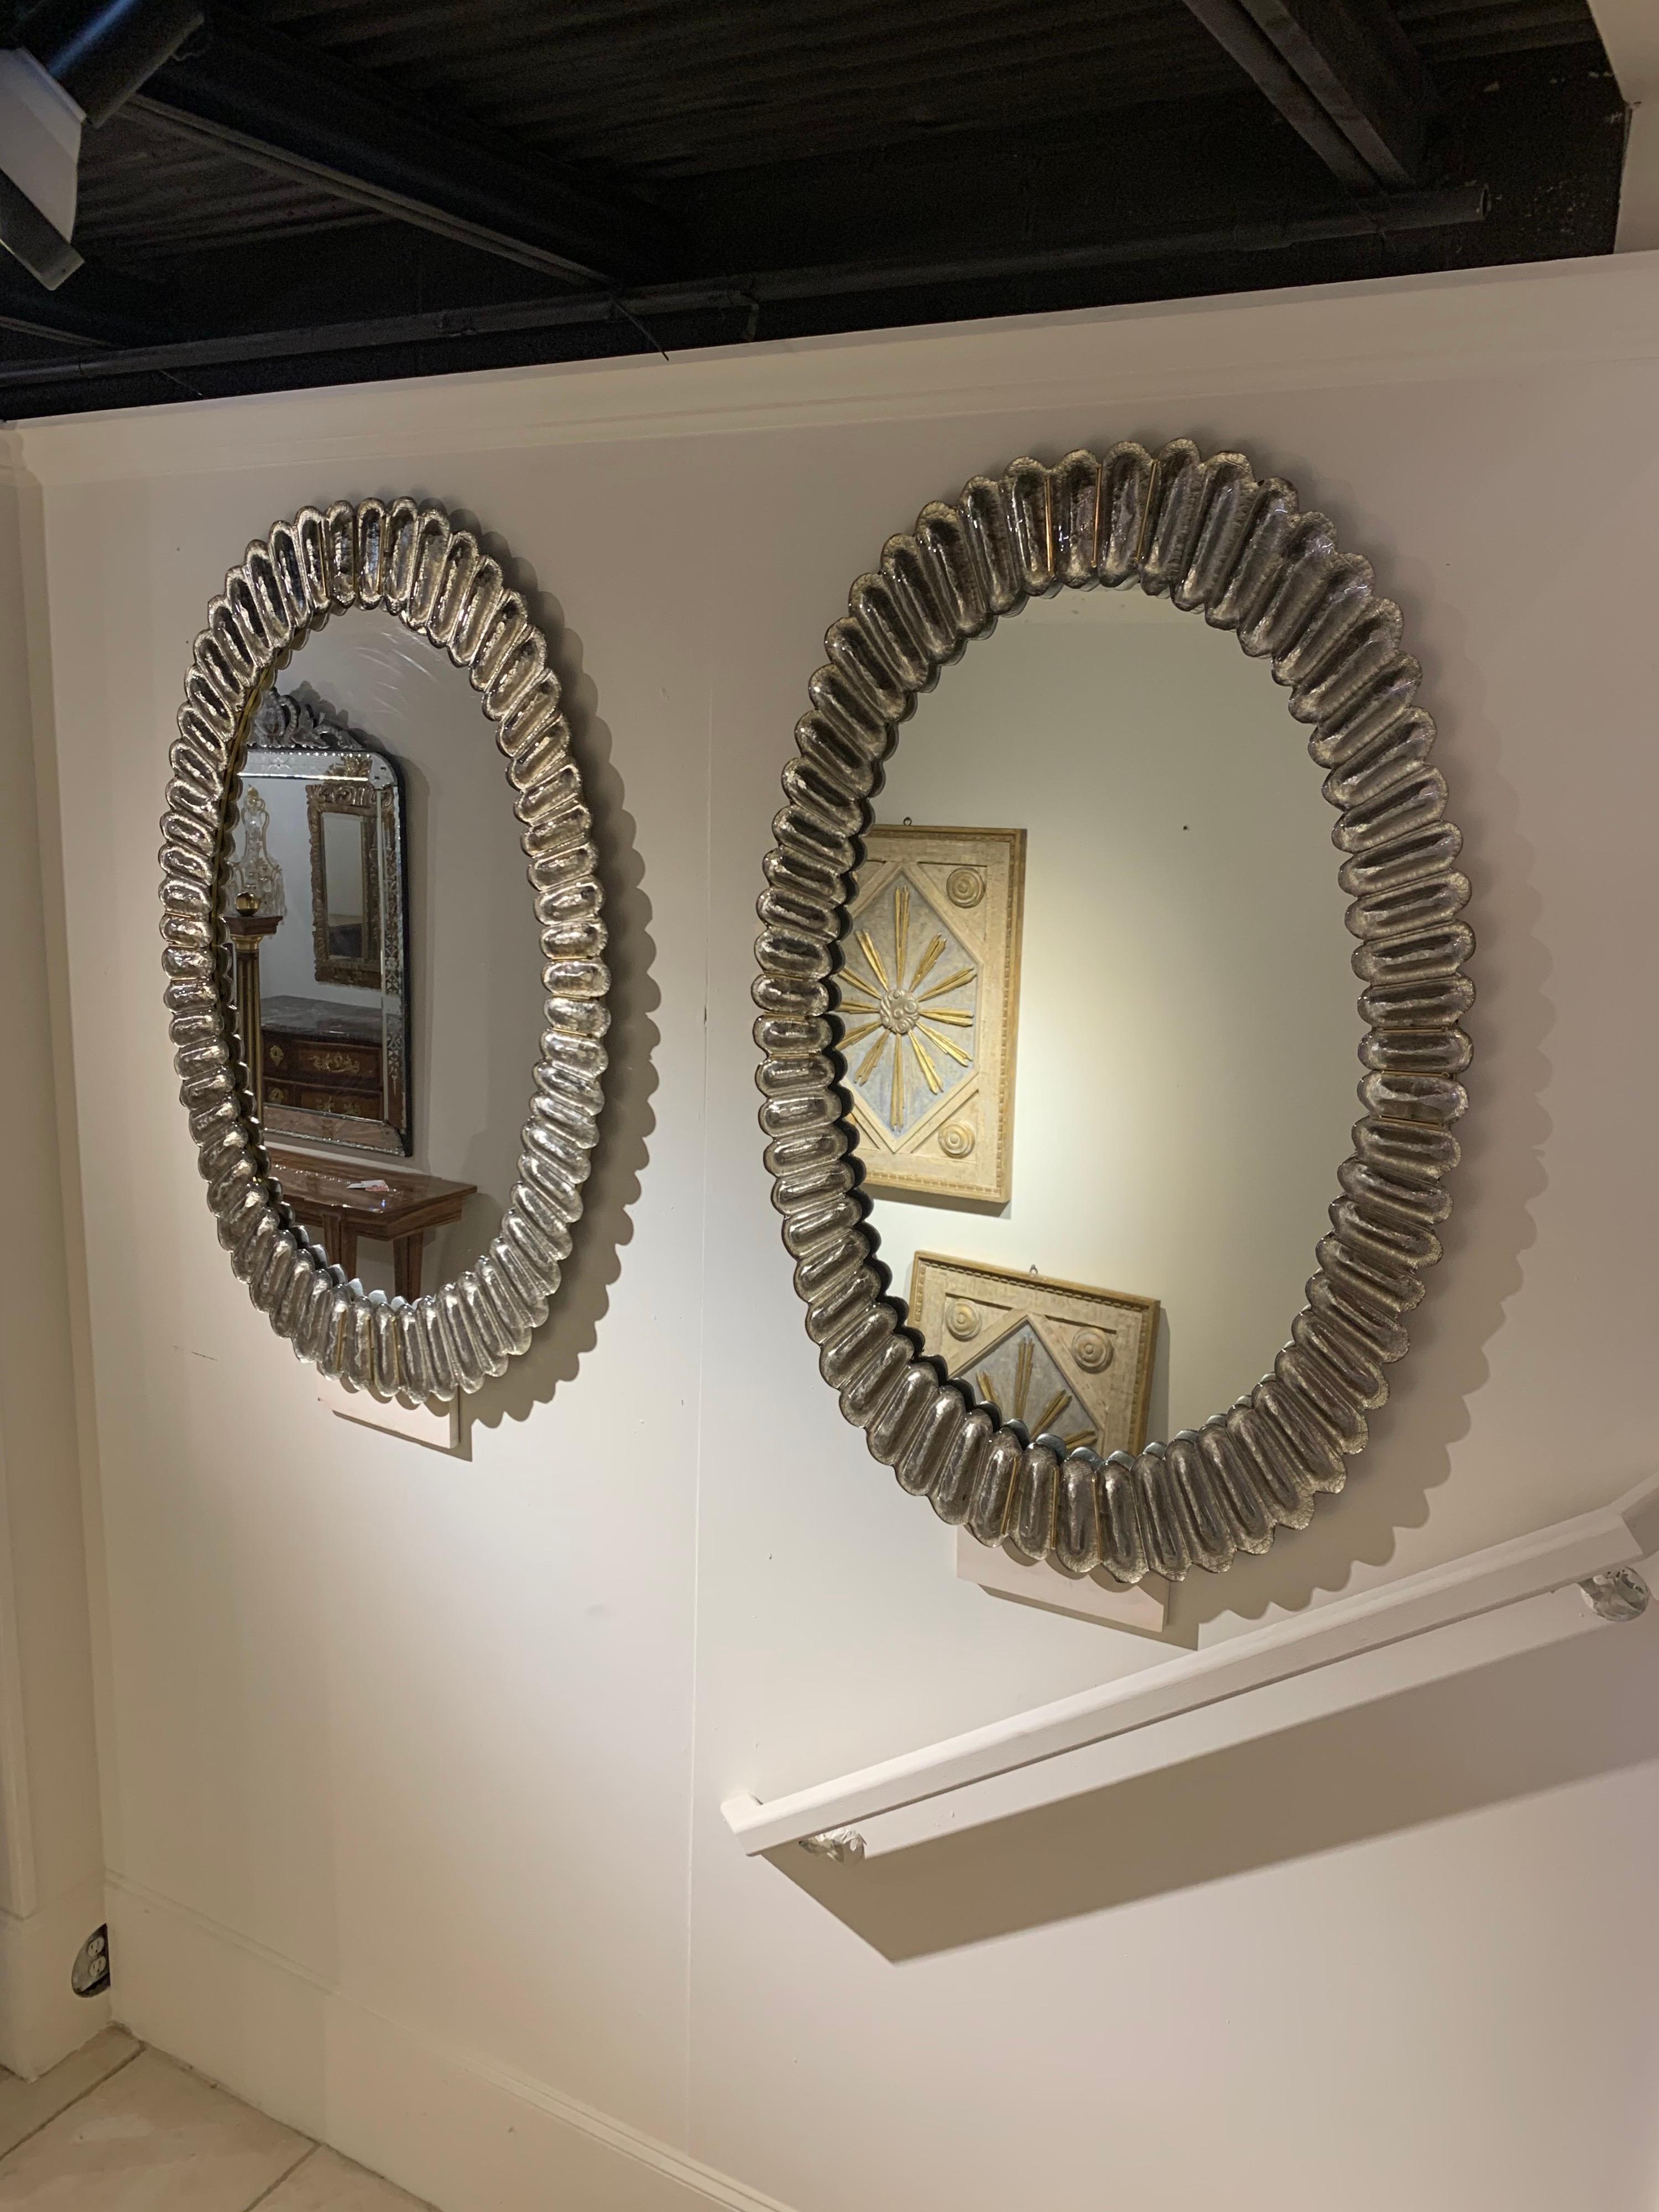 Sehr schöne moderne ovale Spiegel aus Muranoglas mit Messingbeschlägen. Schöne Tiefe und Farbe in diesem Glas. Ein fabelhaftes dekoratives Element! Hinweis: Der angegebene Preis gilt pro Stück.